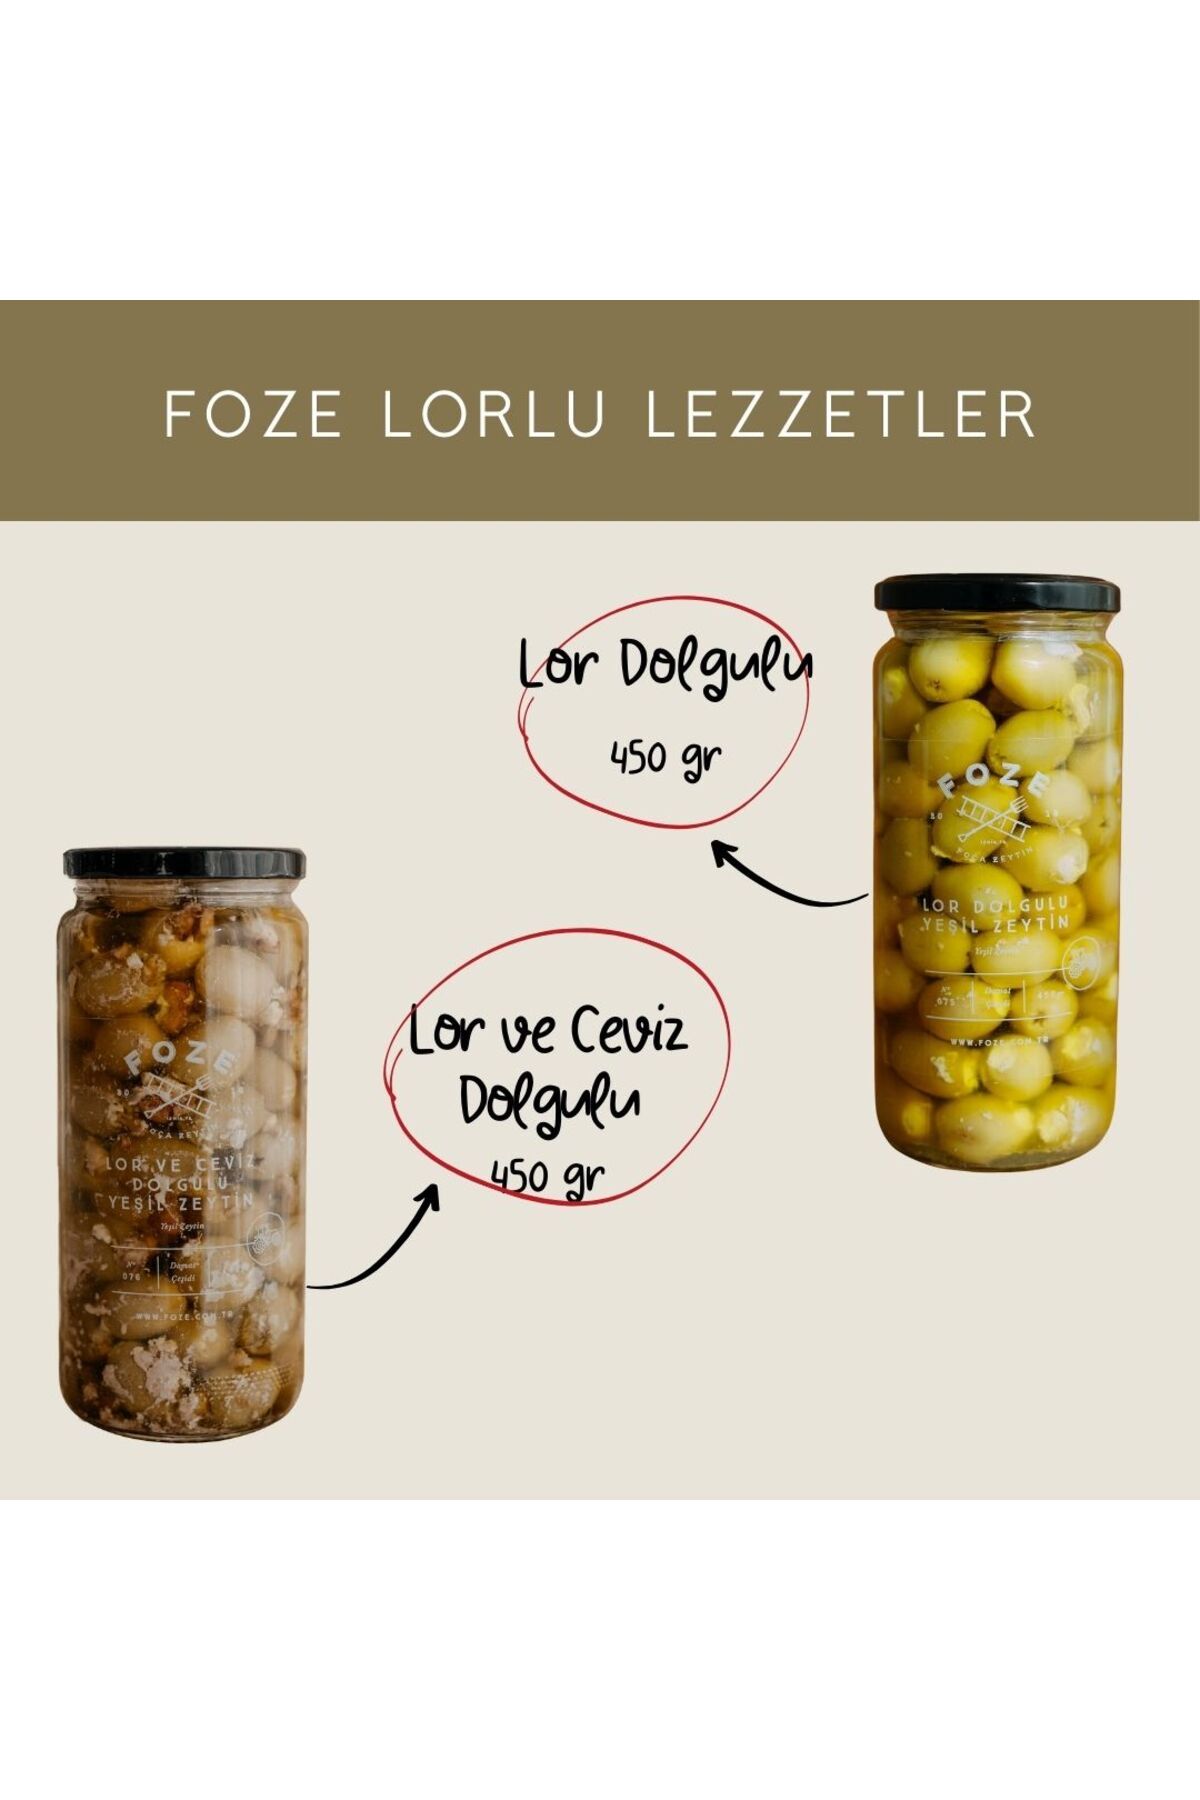 Foze Lorlu Lezzetler